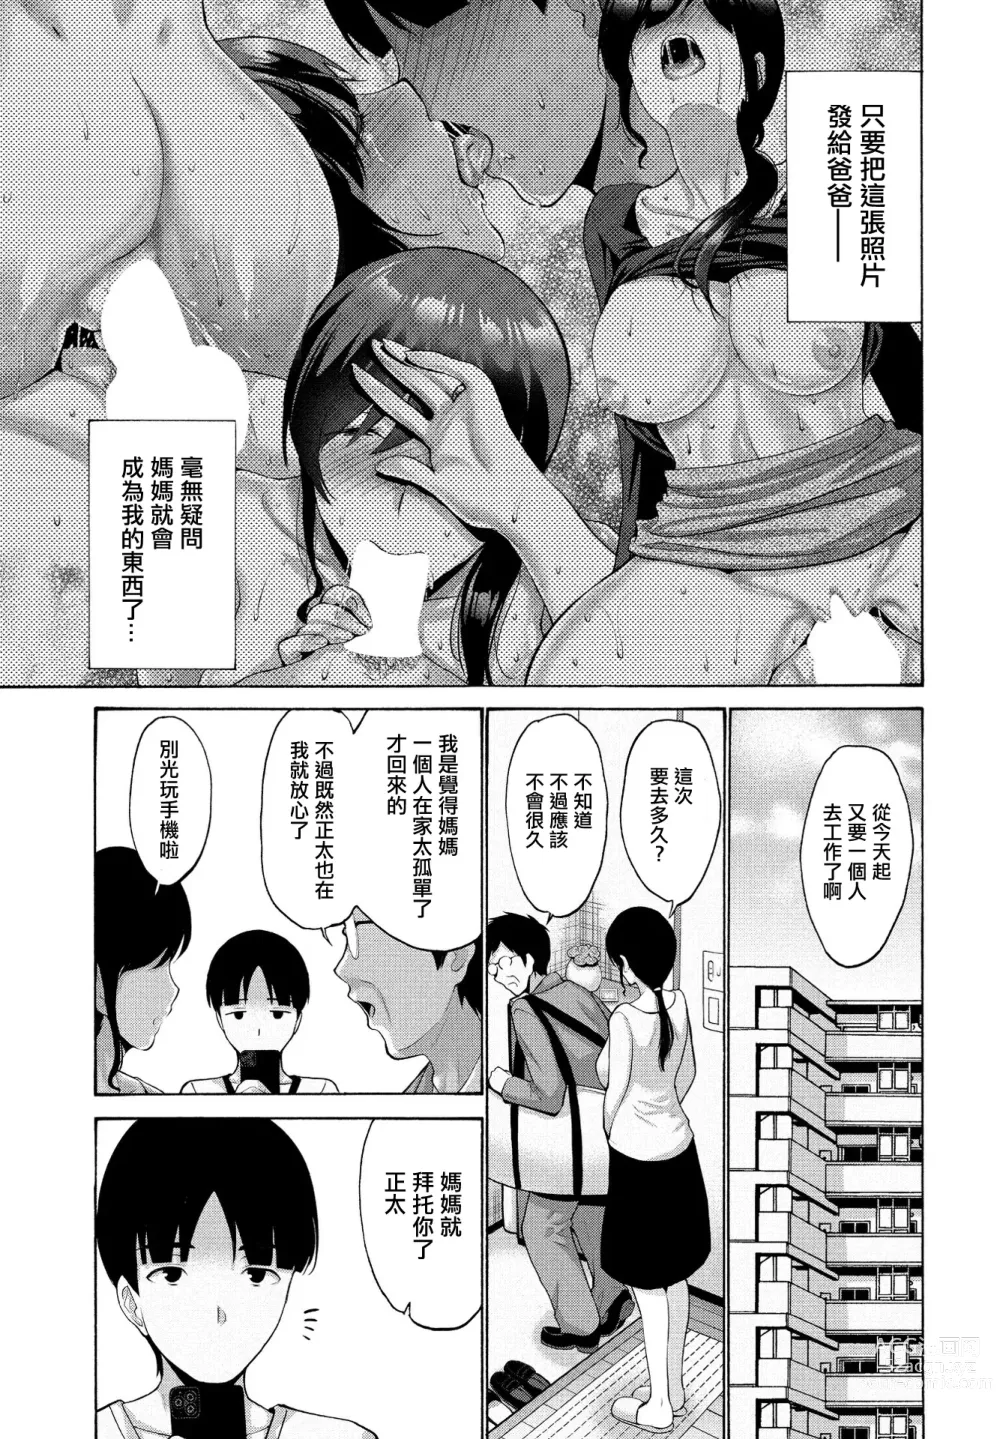 Page 37 of manga Okaa-san ga Kobanare Shite Kurenakute Komaru